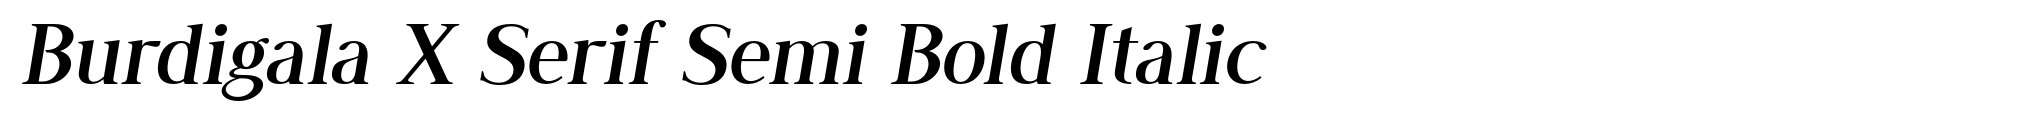 Burdigala X Serif Semi Bold Italic image